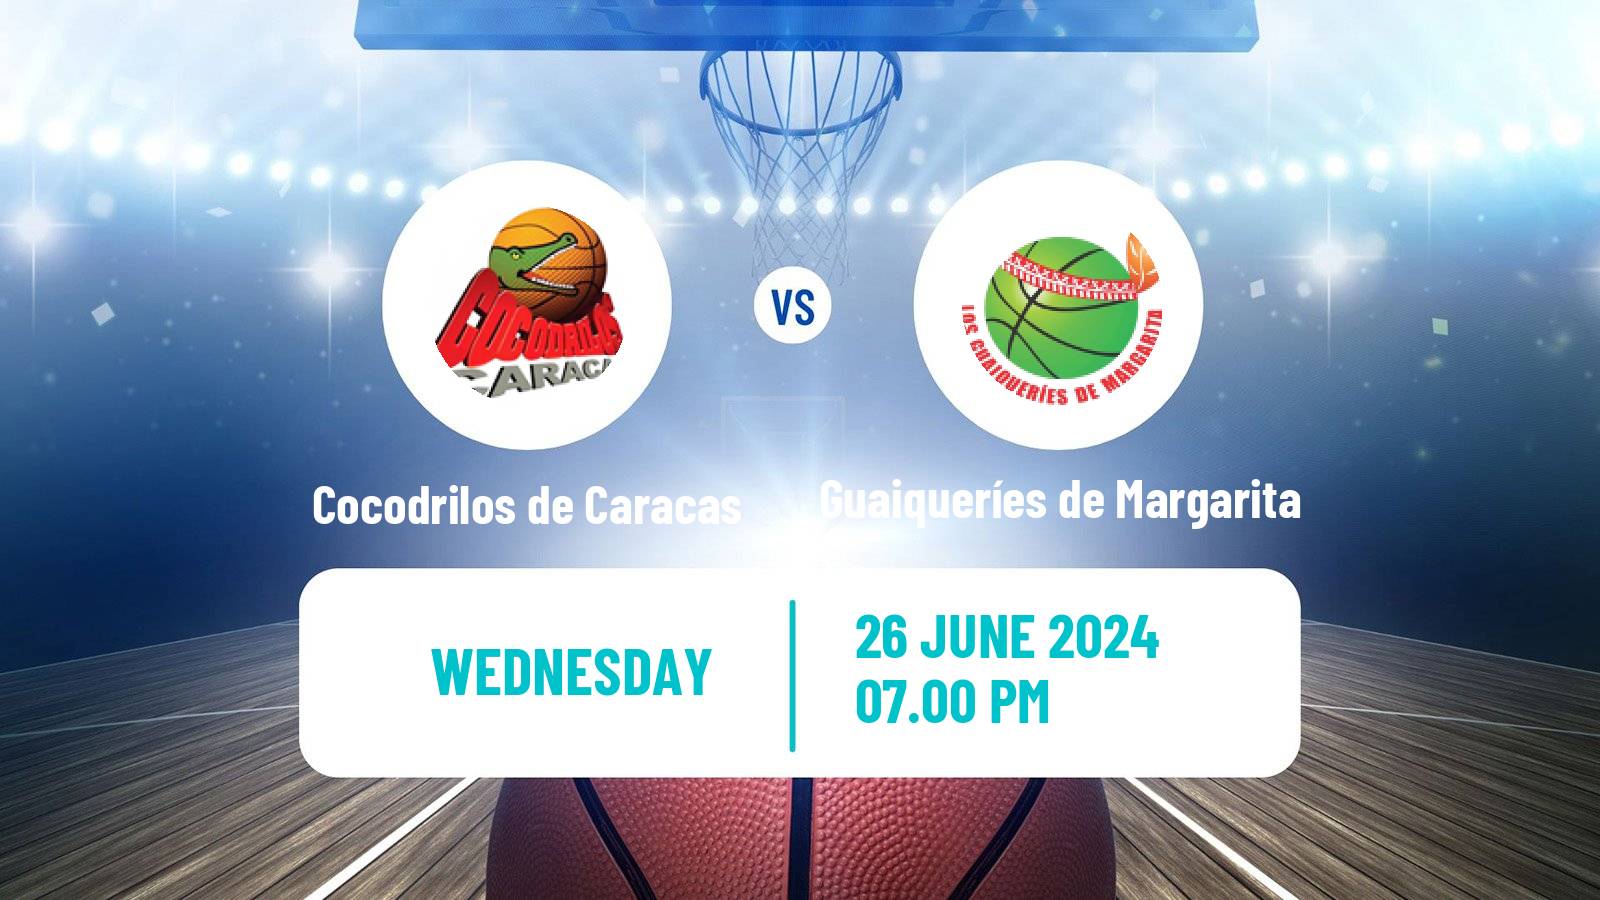 Basketball Venezuelan Superliga Basketball Cocodrilos de Caracas - Guaiqueríes de Margarita